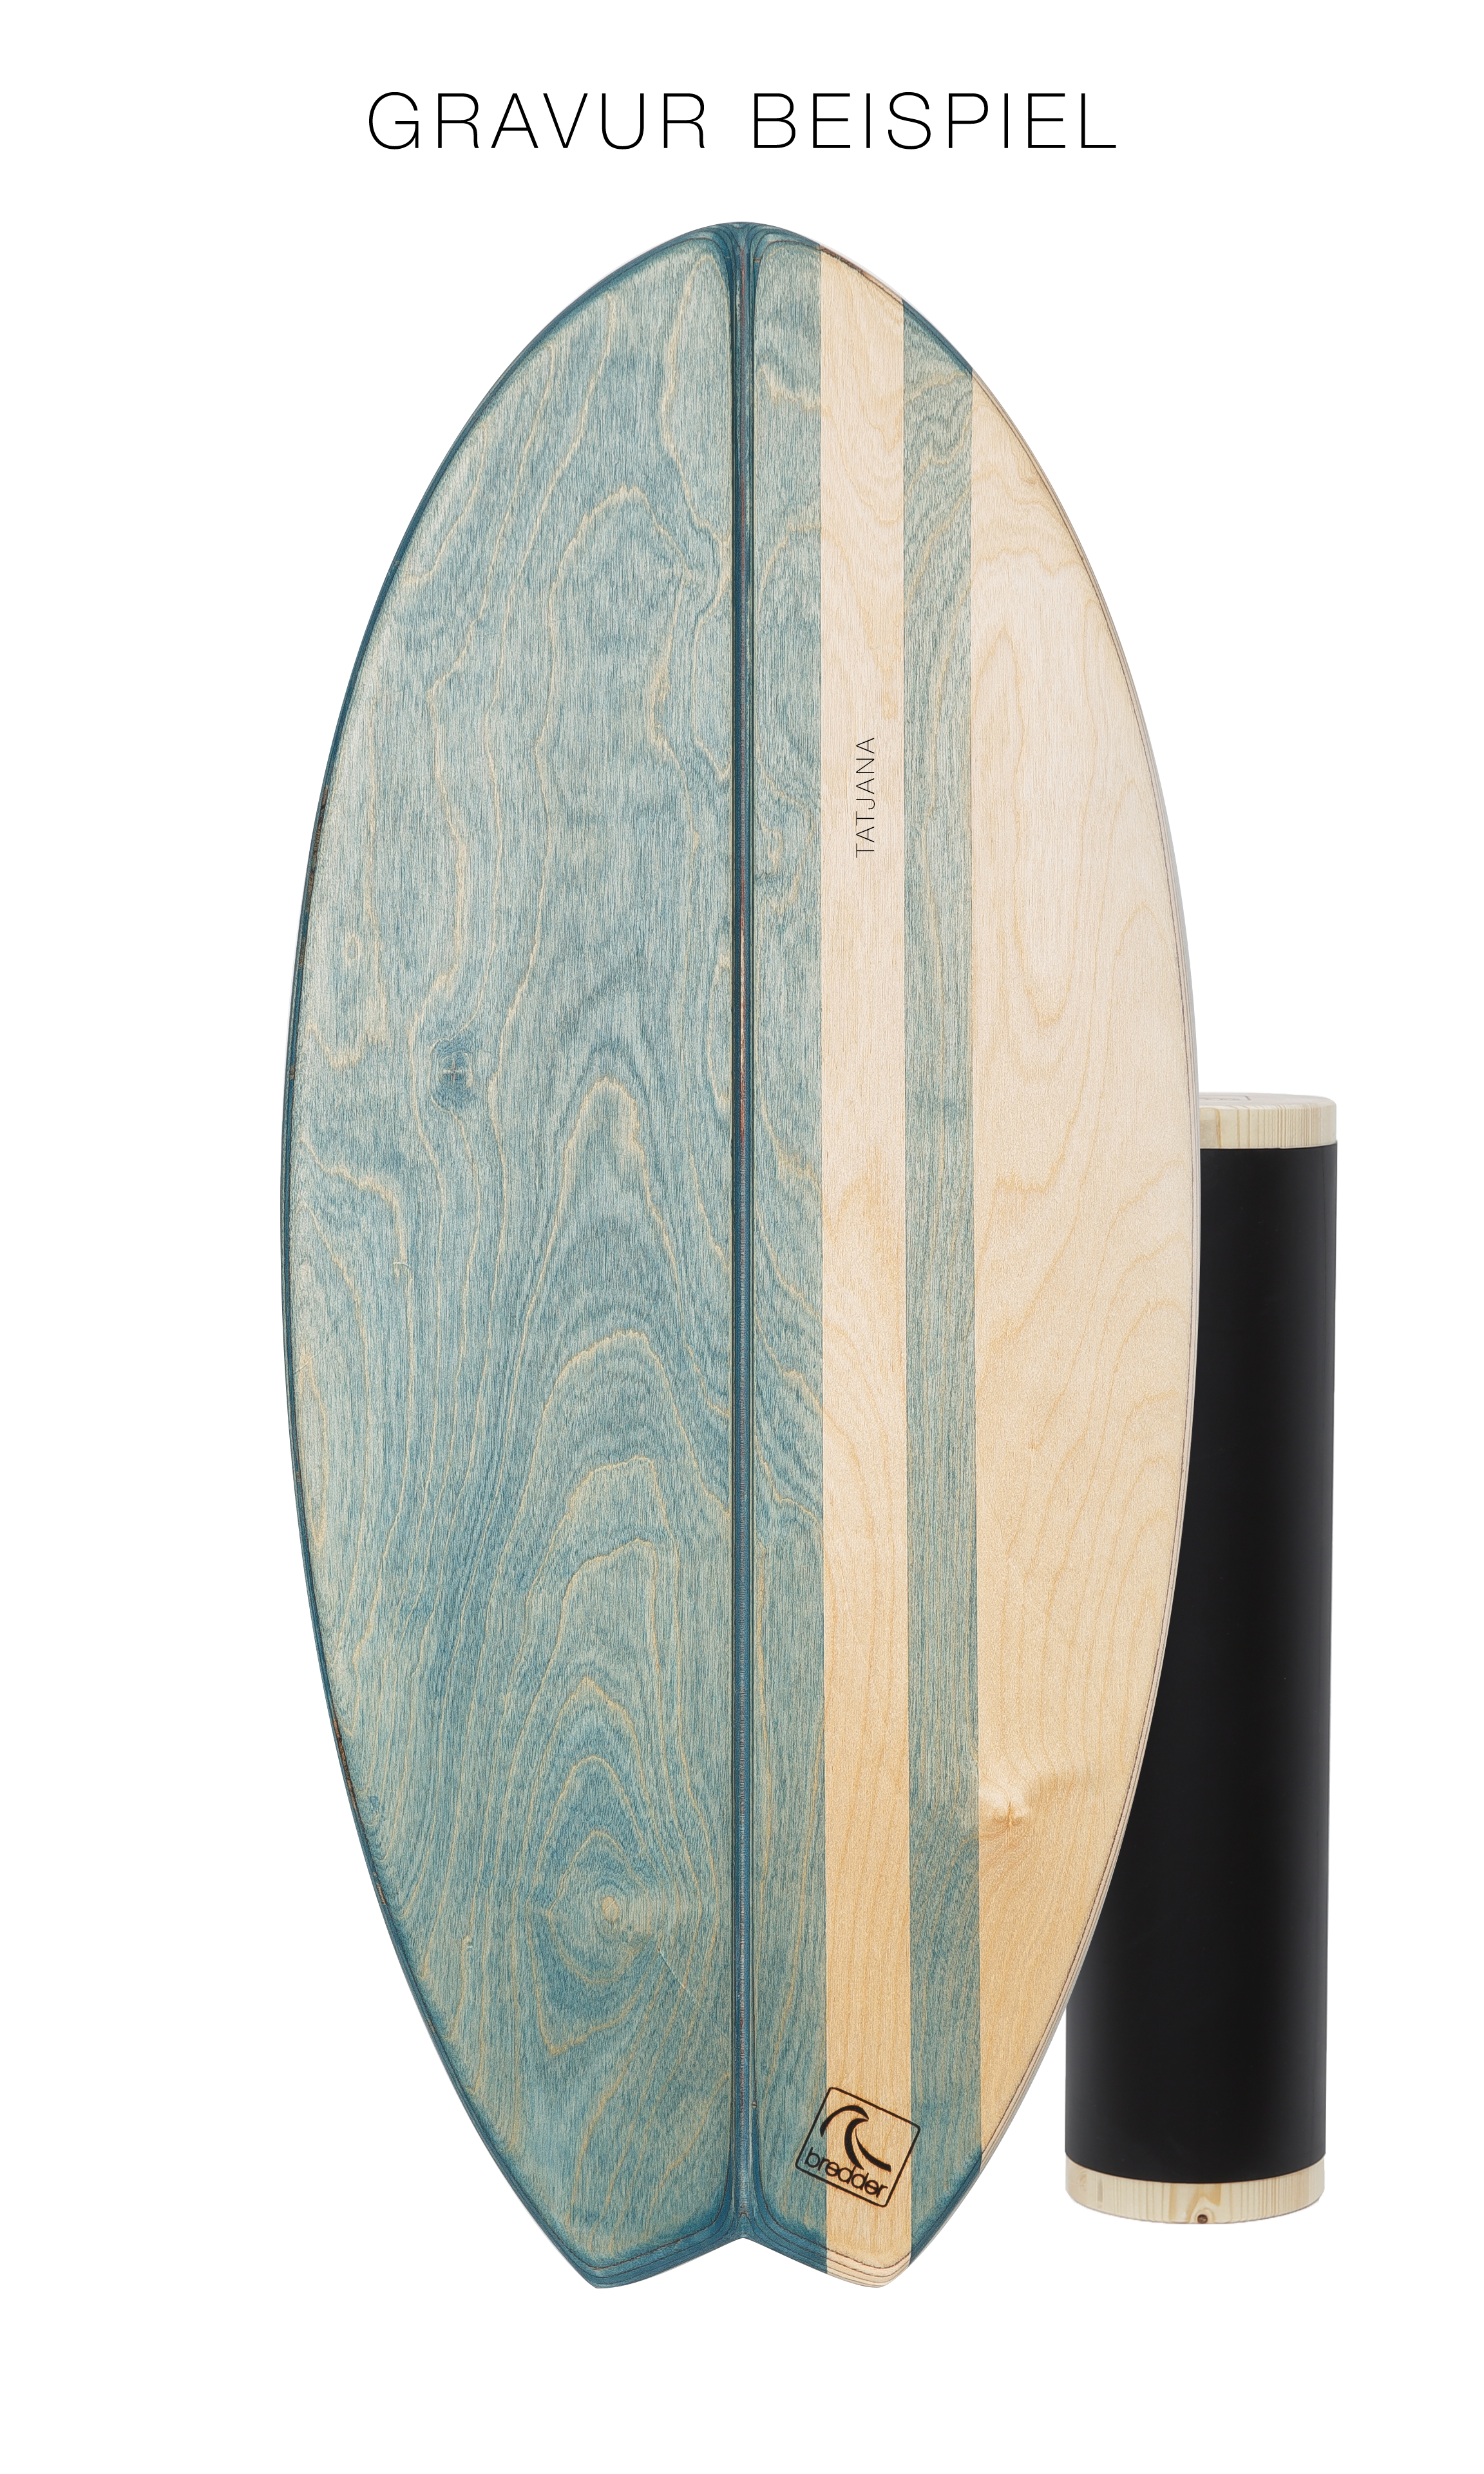 Bredder Balance Board Aquana Fisch Surfboard blau Vollholzrolle, Frontansicht mit Gravurbeispiel